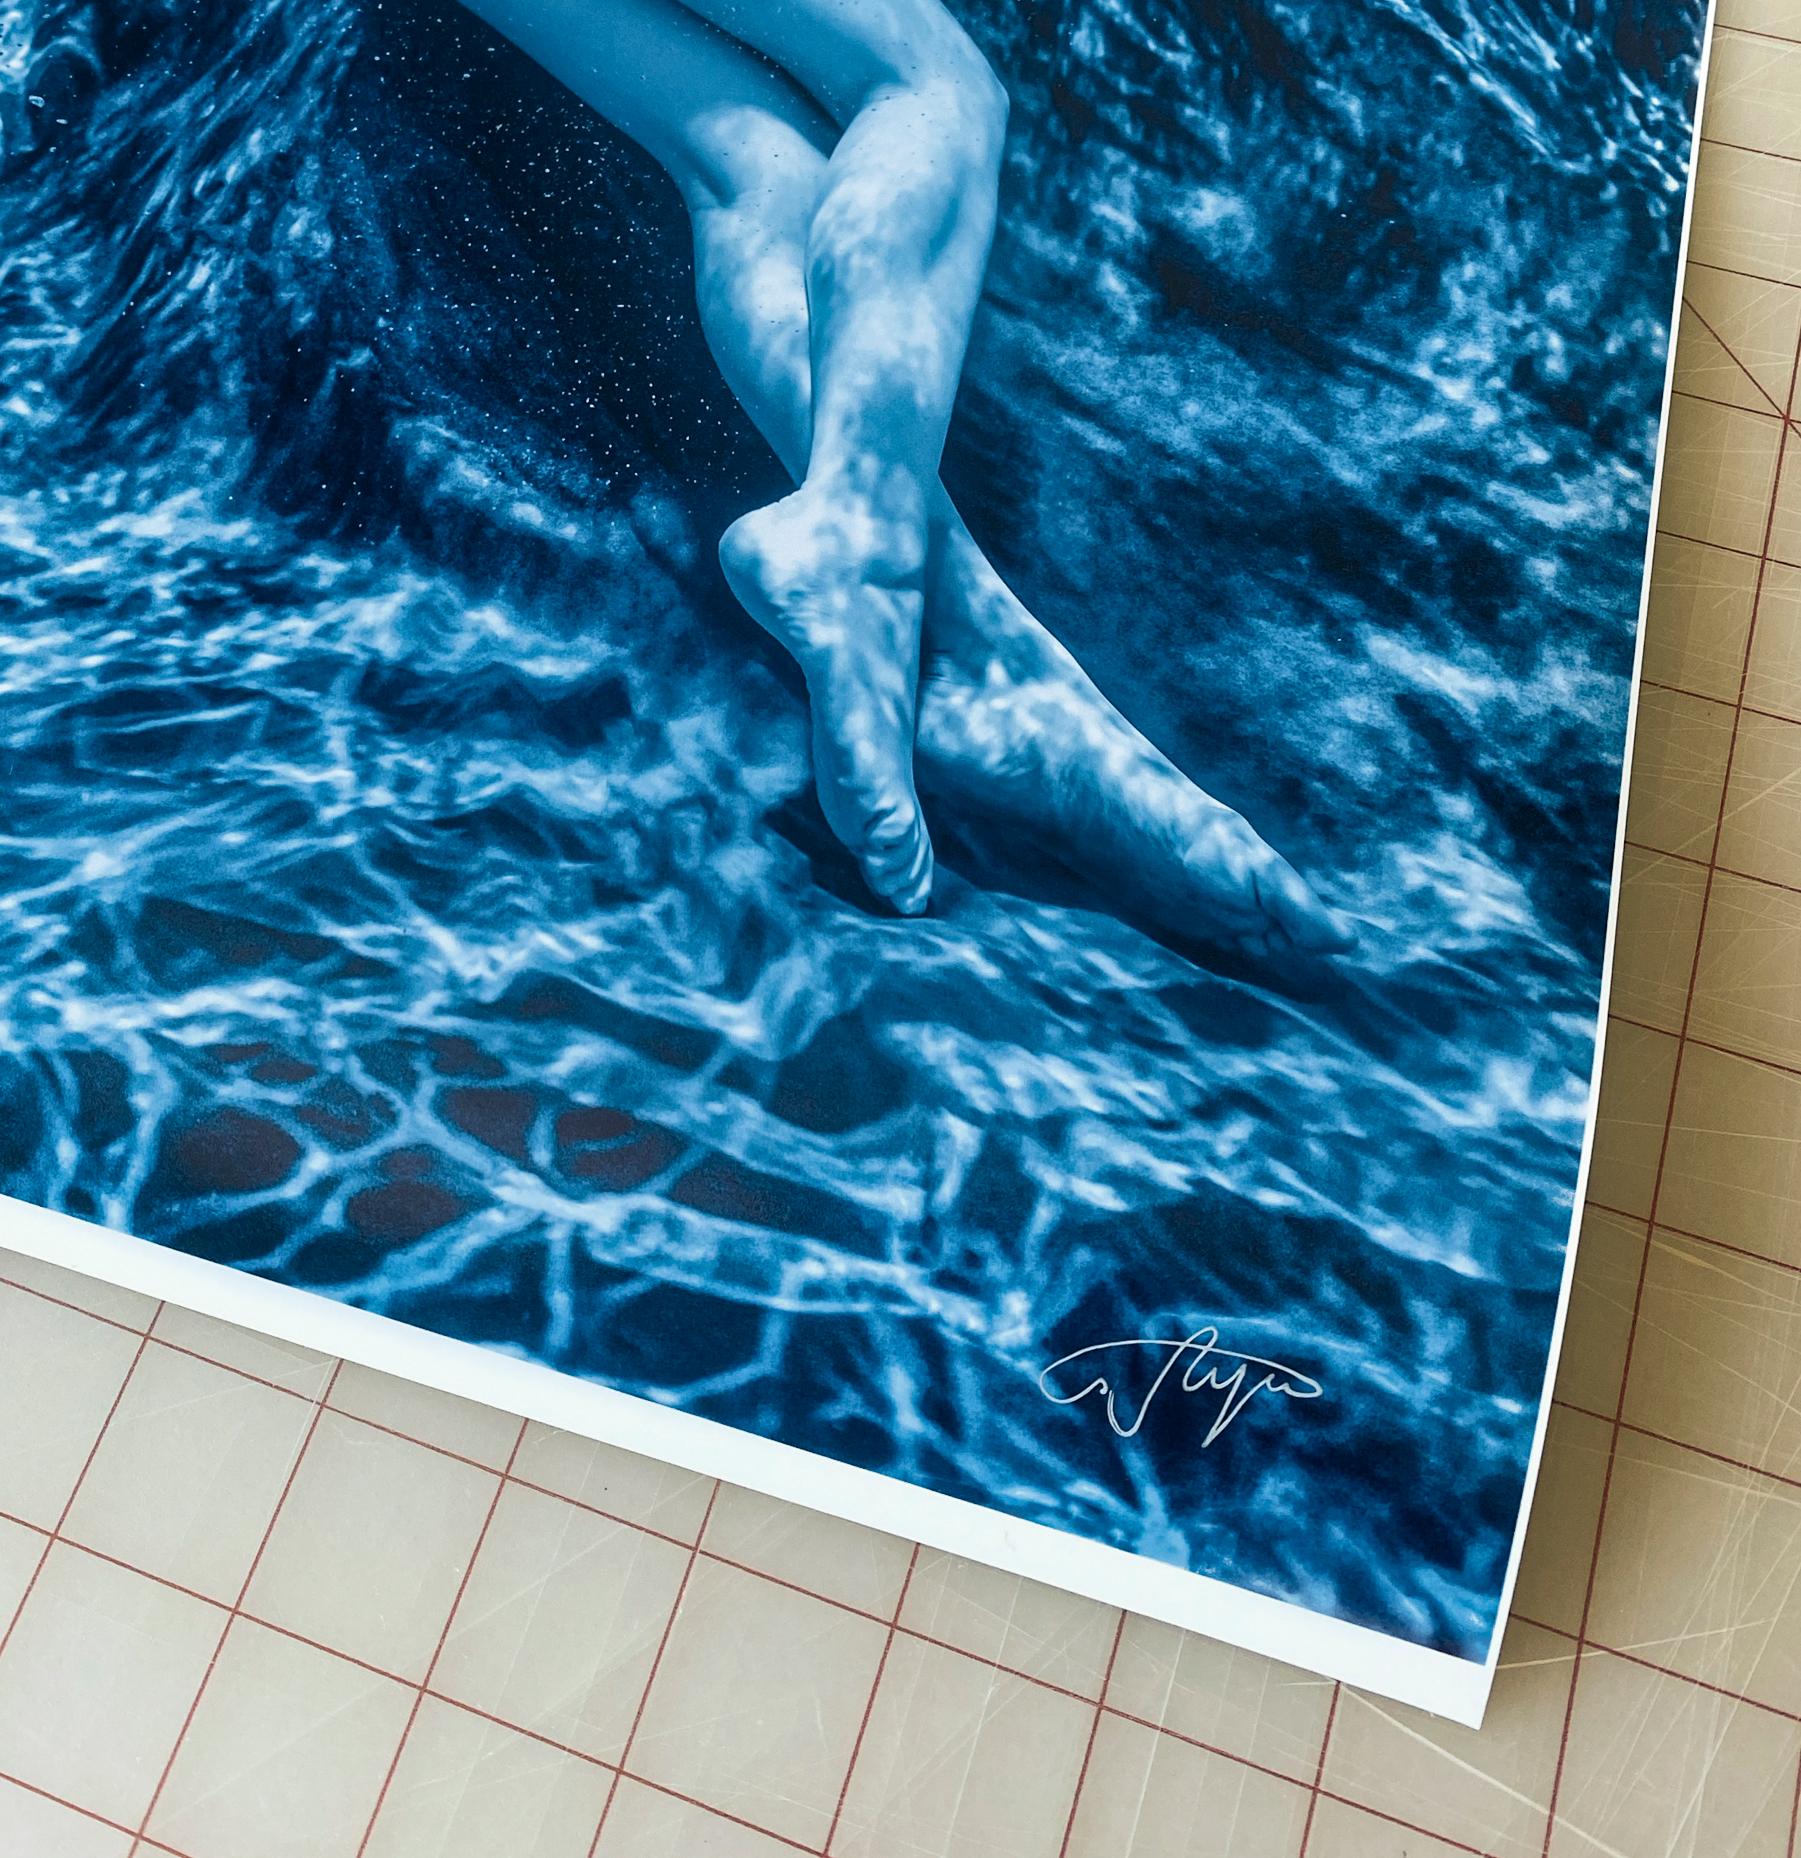 Eine schöne  und anspruchsvolles Unterwasserfoto einer jungen nackten Frau im Schwimmbad.  Dies ist eine Schwarzweißfotografie  fast schwarz-weiß mit aquatischer Tönung.
Dies ist das Foto IV aus der Moonlight-Serie.

Original-Pigmentdruck in